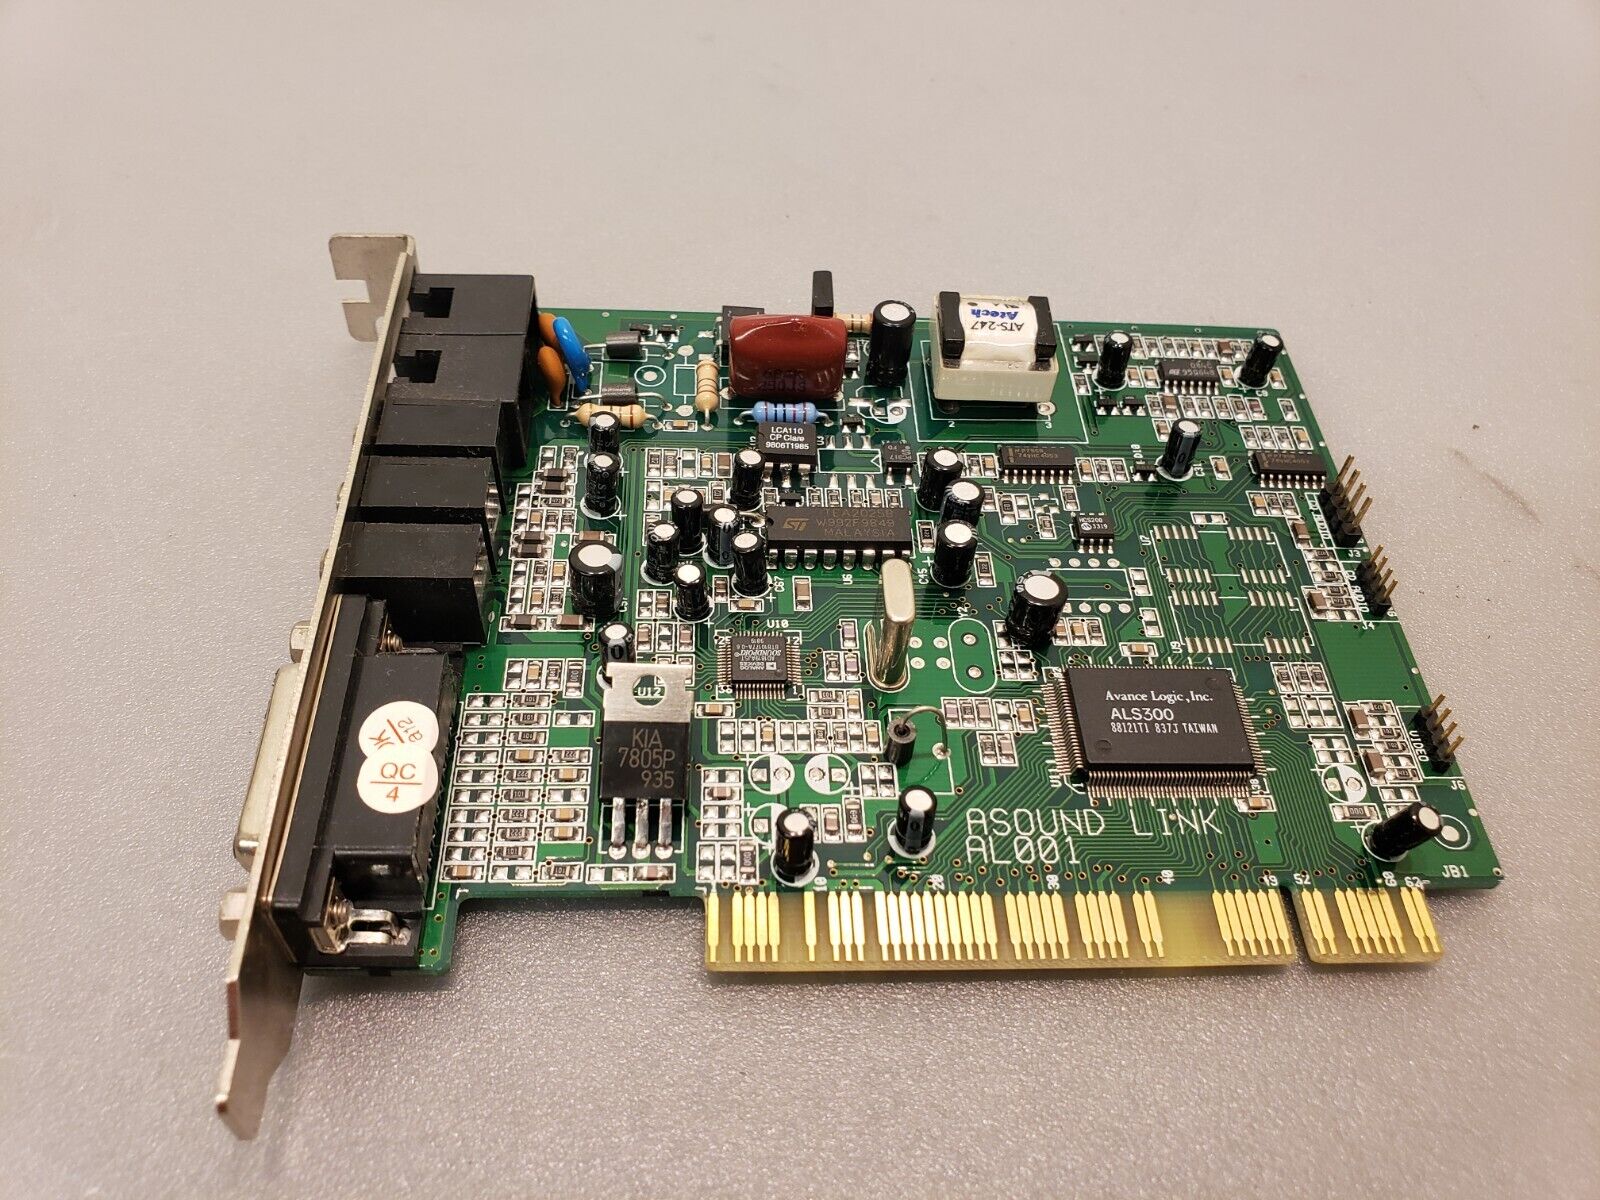 Vintage Asound Link Avance Logic ALS ALS300 AL001 PCI Sound Card Modem Tested